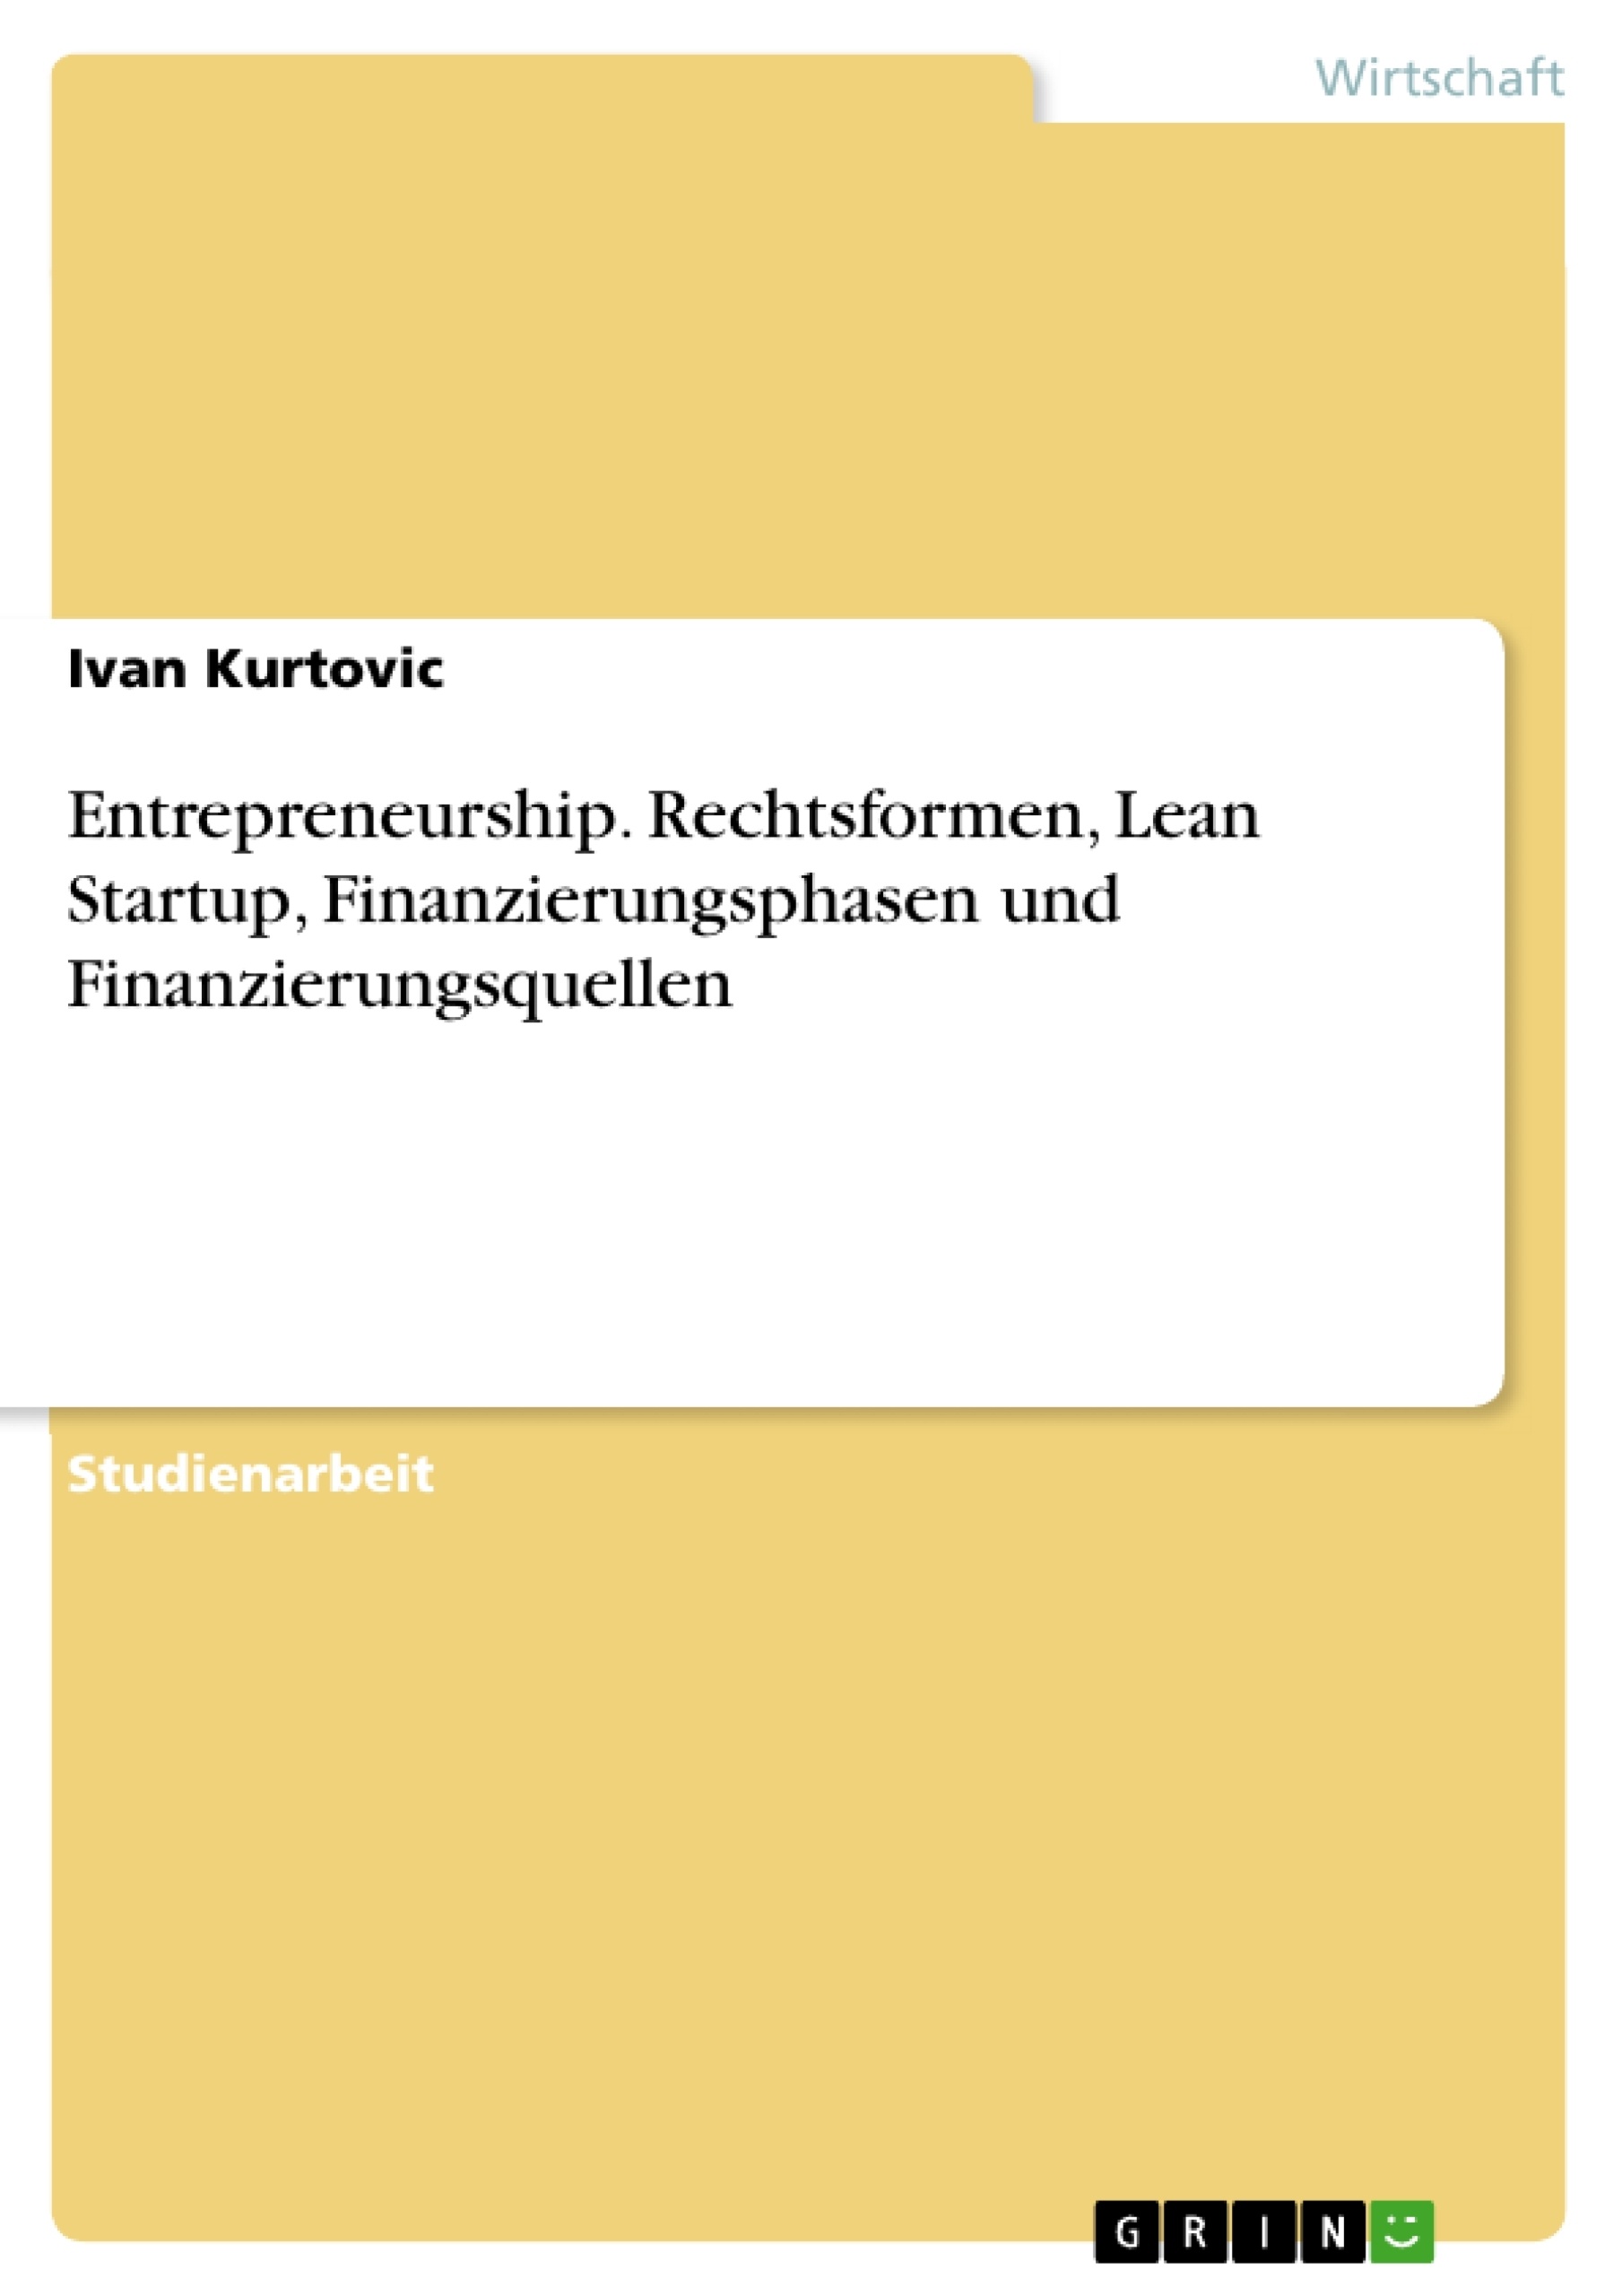 Title: Entrepreneurship. Rechtsformen, Lean Startup, Finanzierungsphasen und Finanzierungsquellen